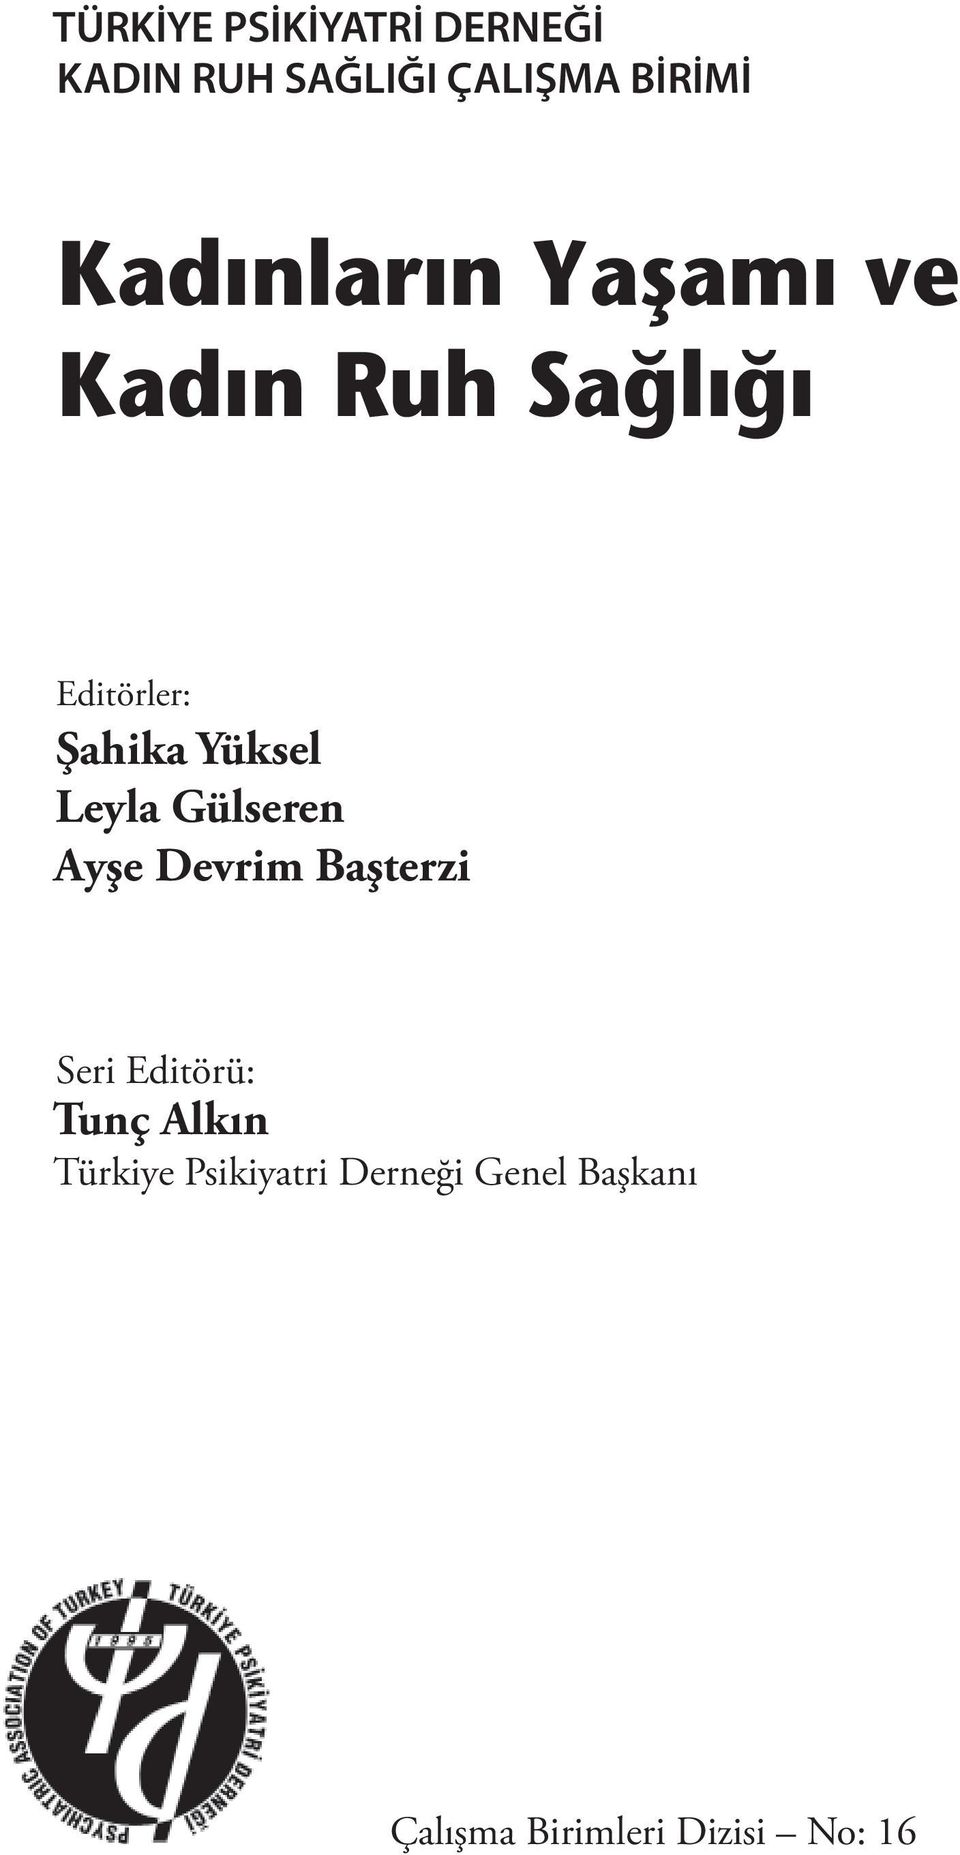 Gülseren Ayşe Devrim Başterzi Seri Editörü: Tunç Alkın Türkiye